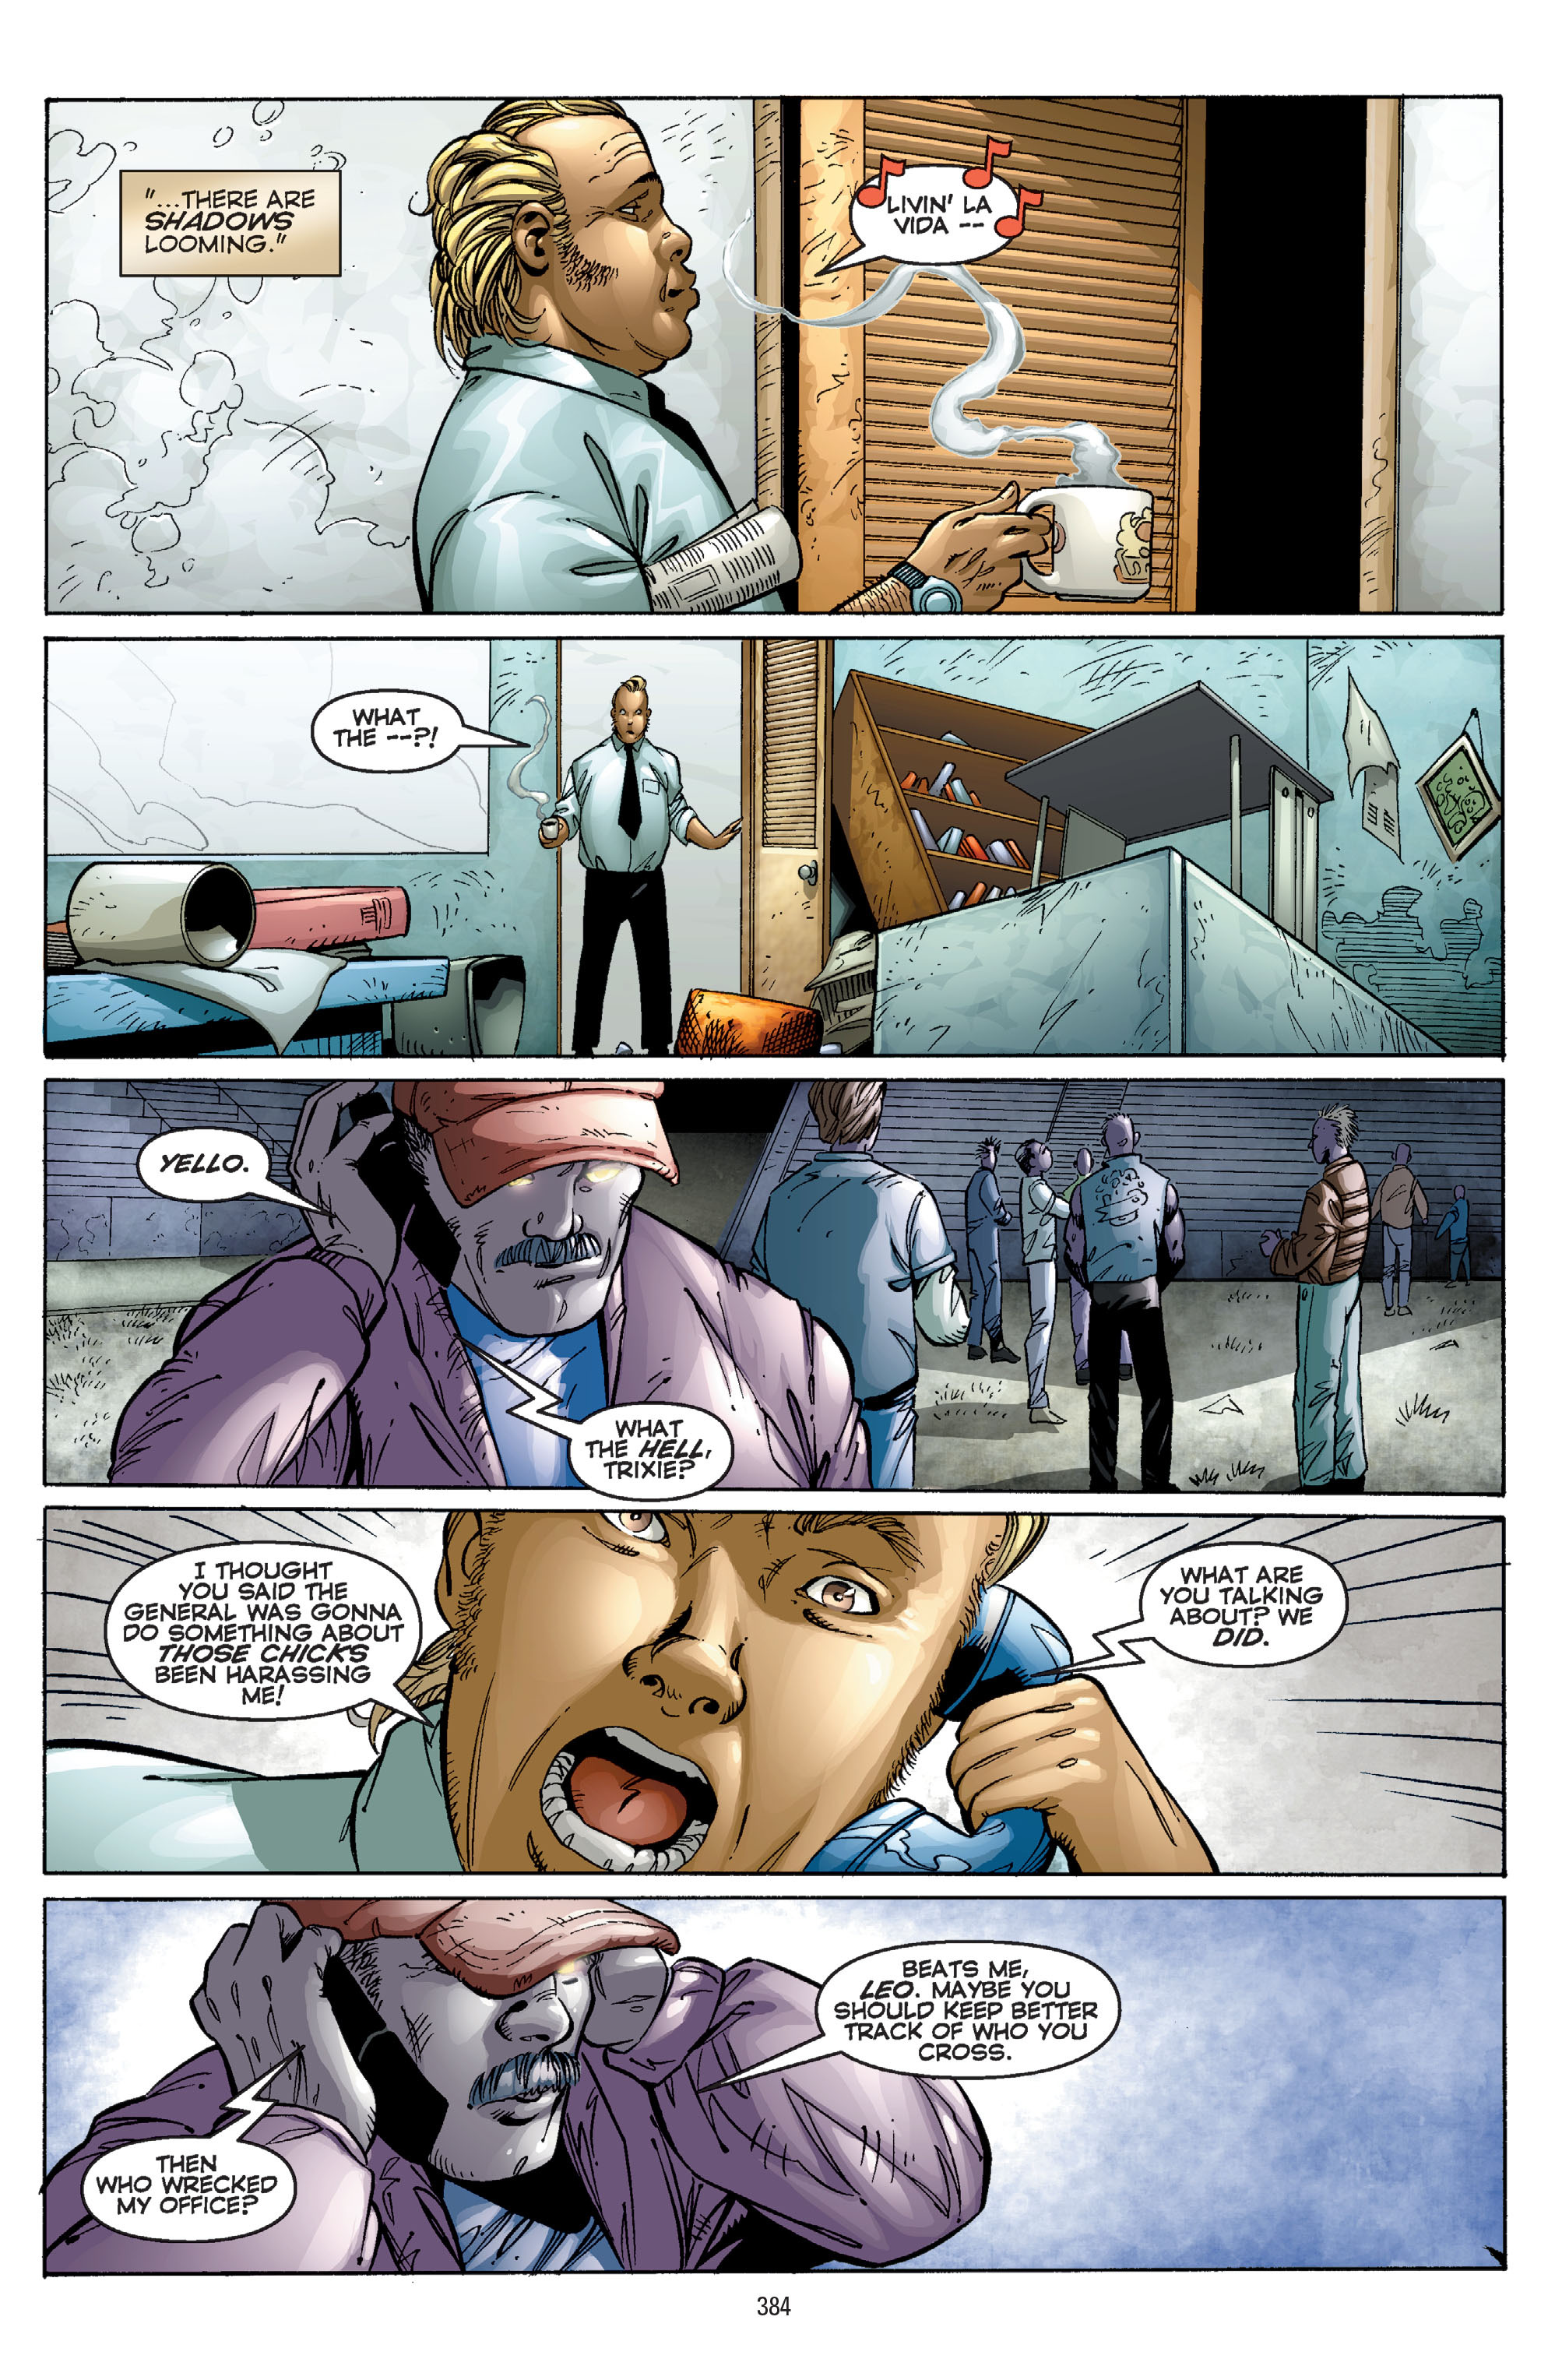 DC Comics/Dark Horse Comics: Justice League Full #1 - English 374